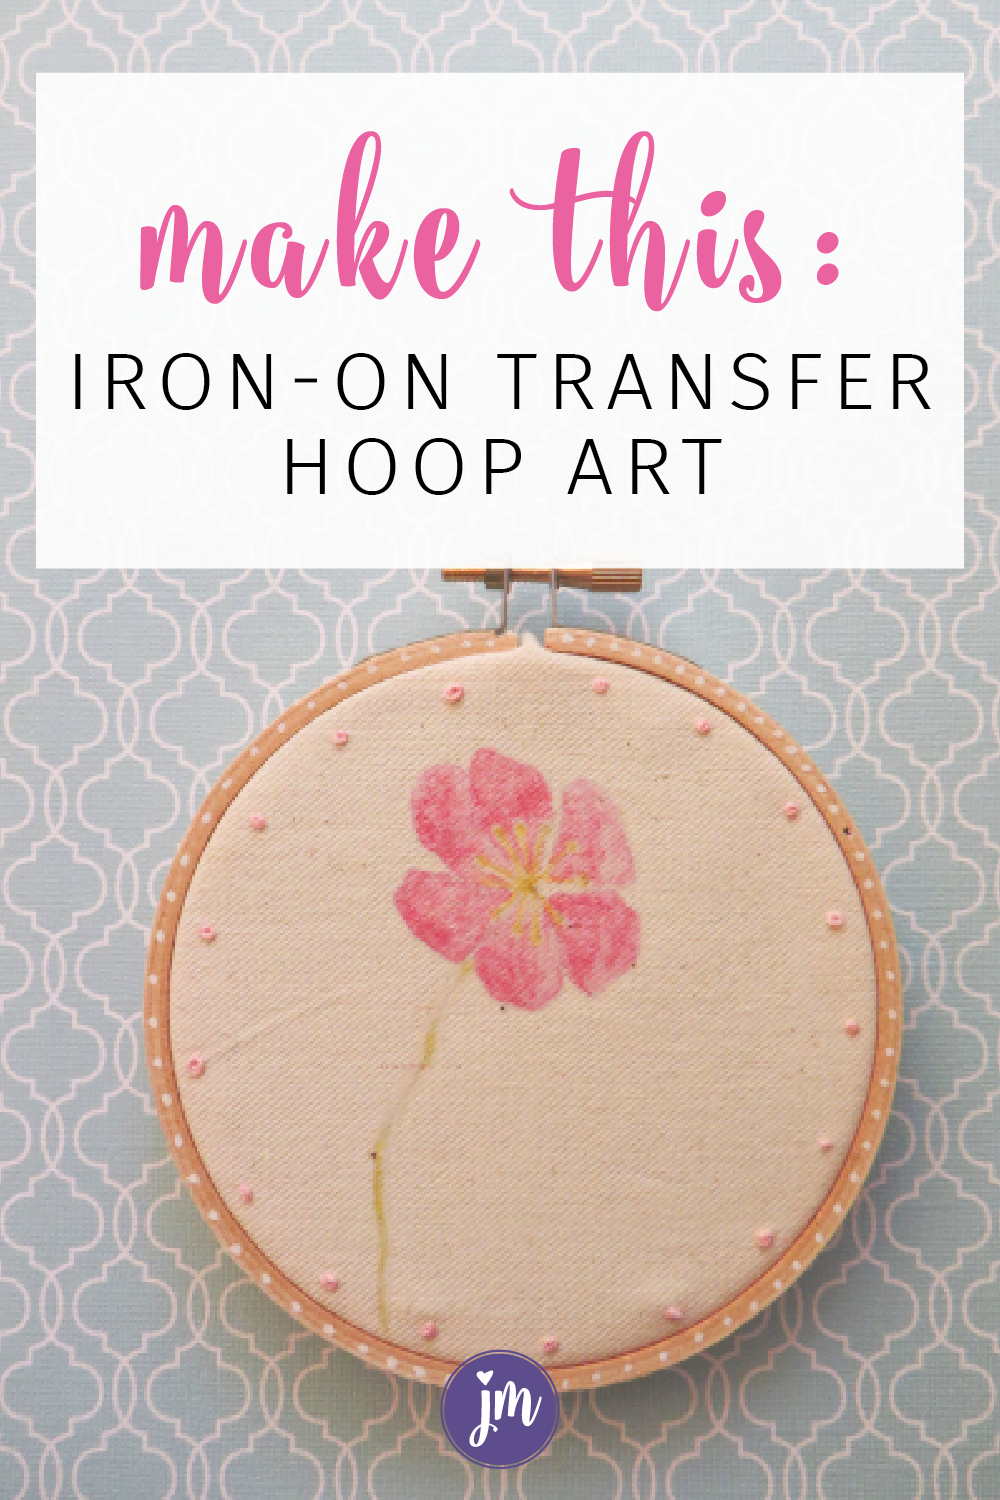 Iron-on Transfer Hoop Art